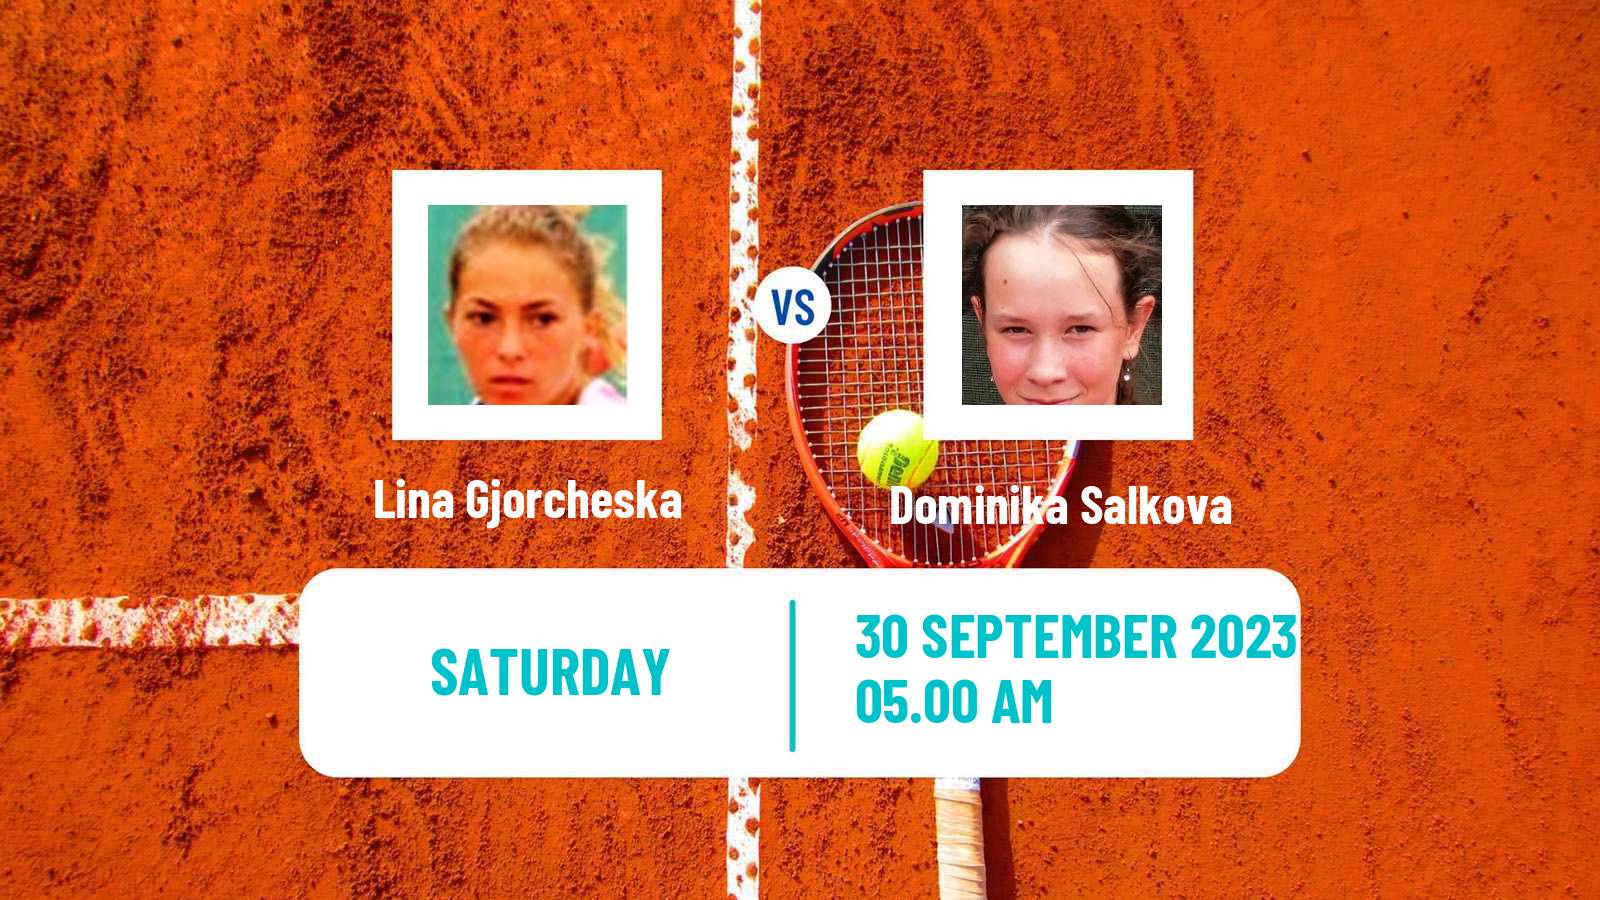 Tennis ITF W40 Kursumlijska Banja Women Lina Gjorcheska - Dominika Salkova